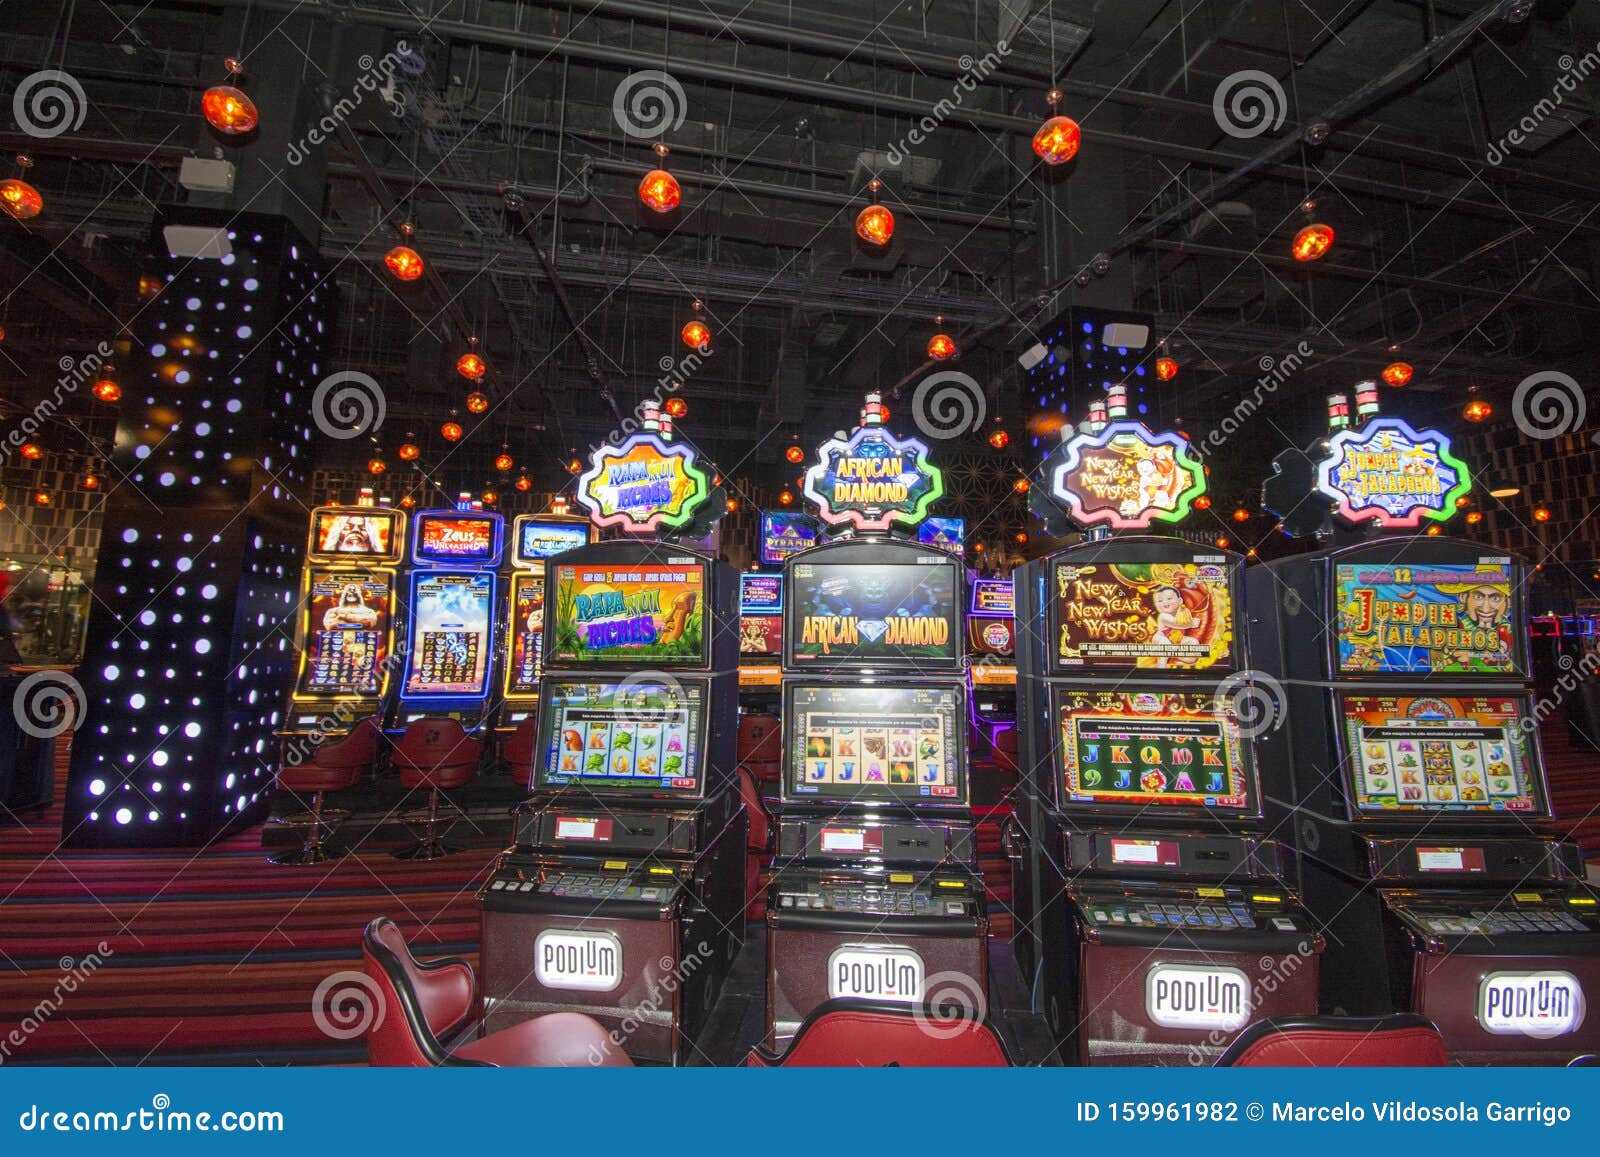 Diez formas de comenzar a vender inmediatamente casinos online legales en chile